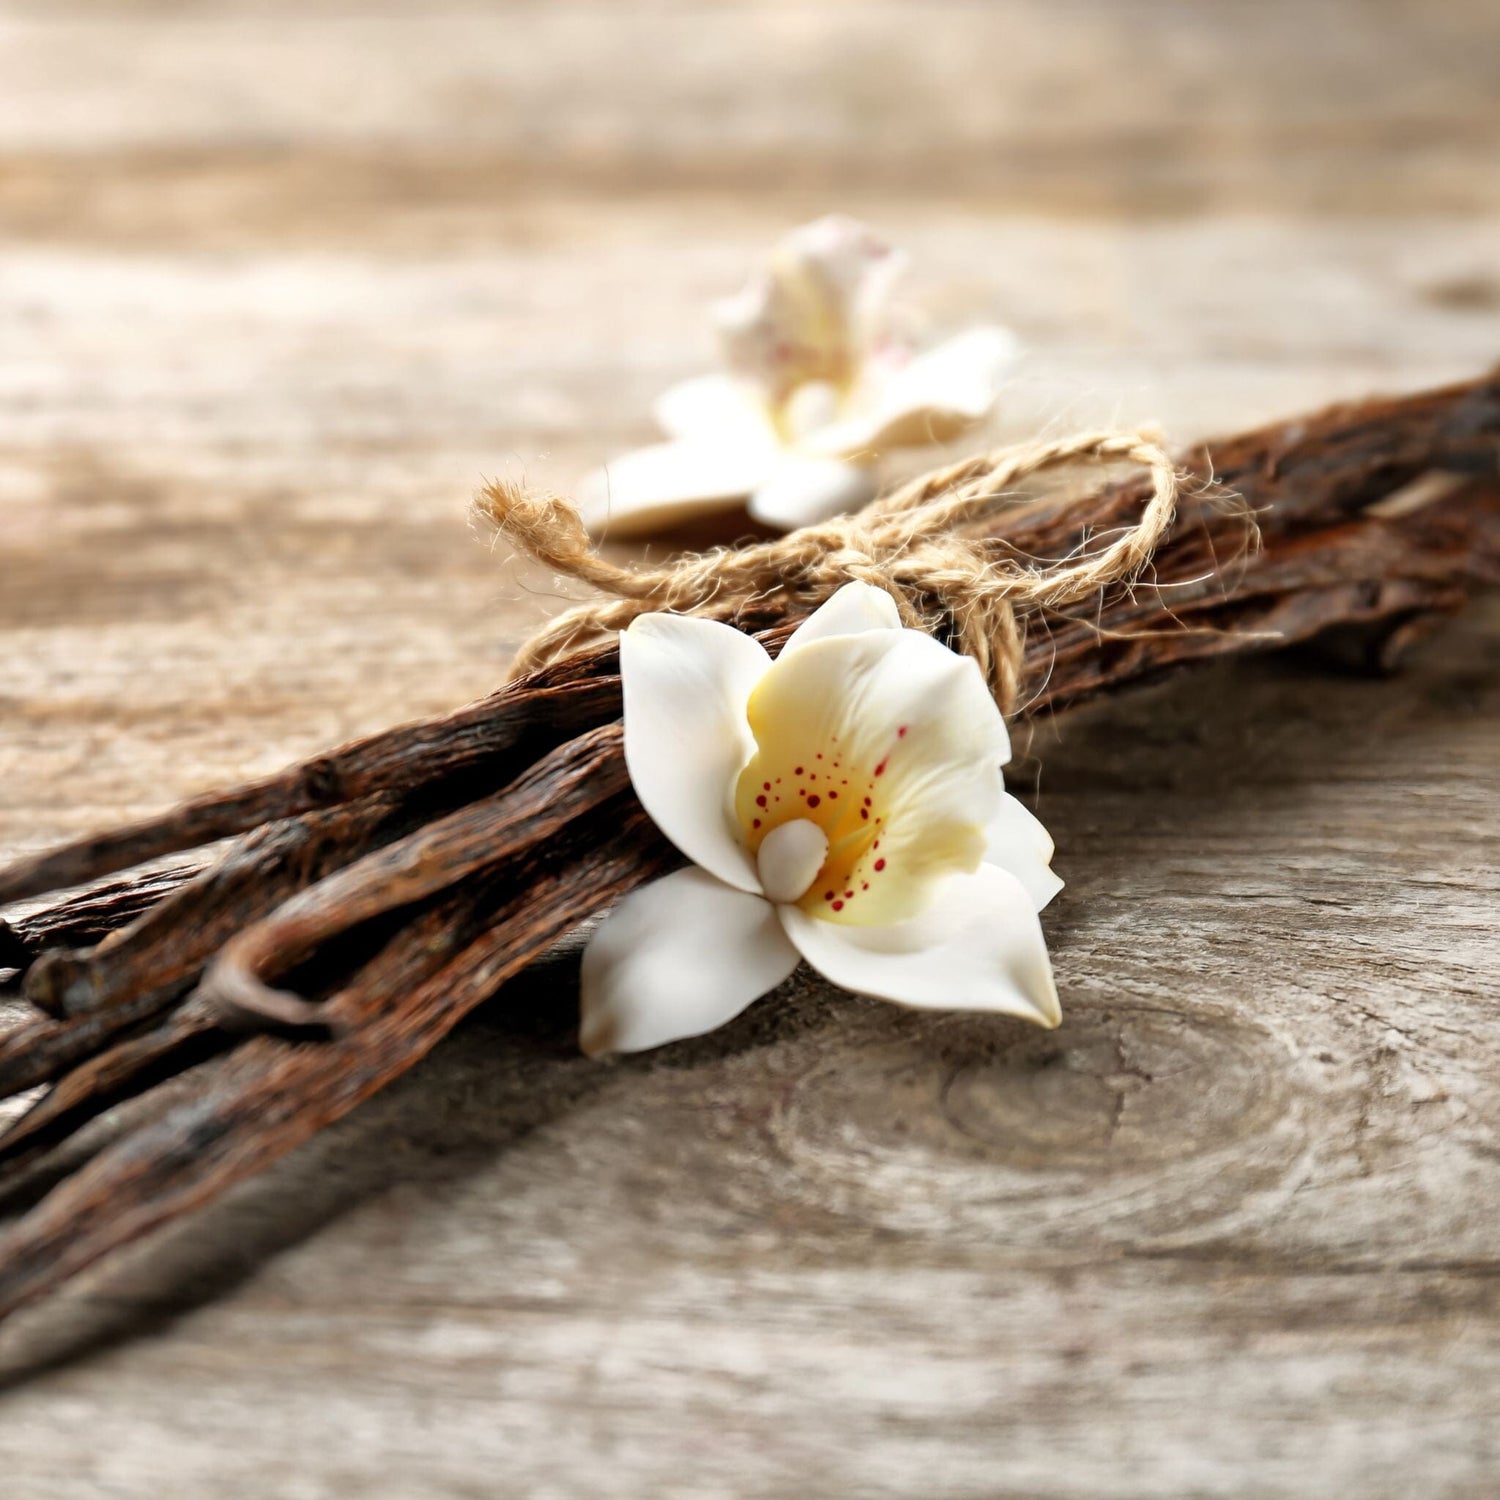 Vanilla flower and vanilla beans on wooden table